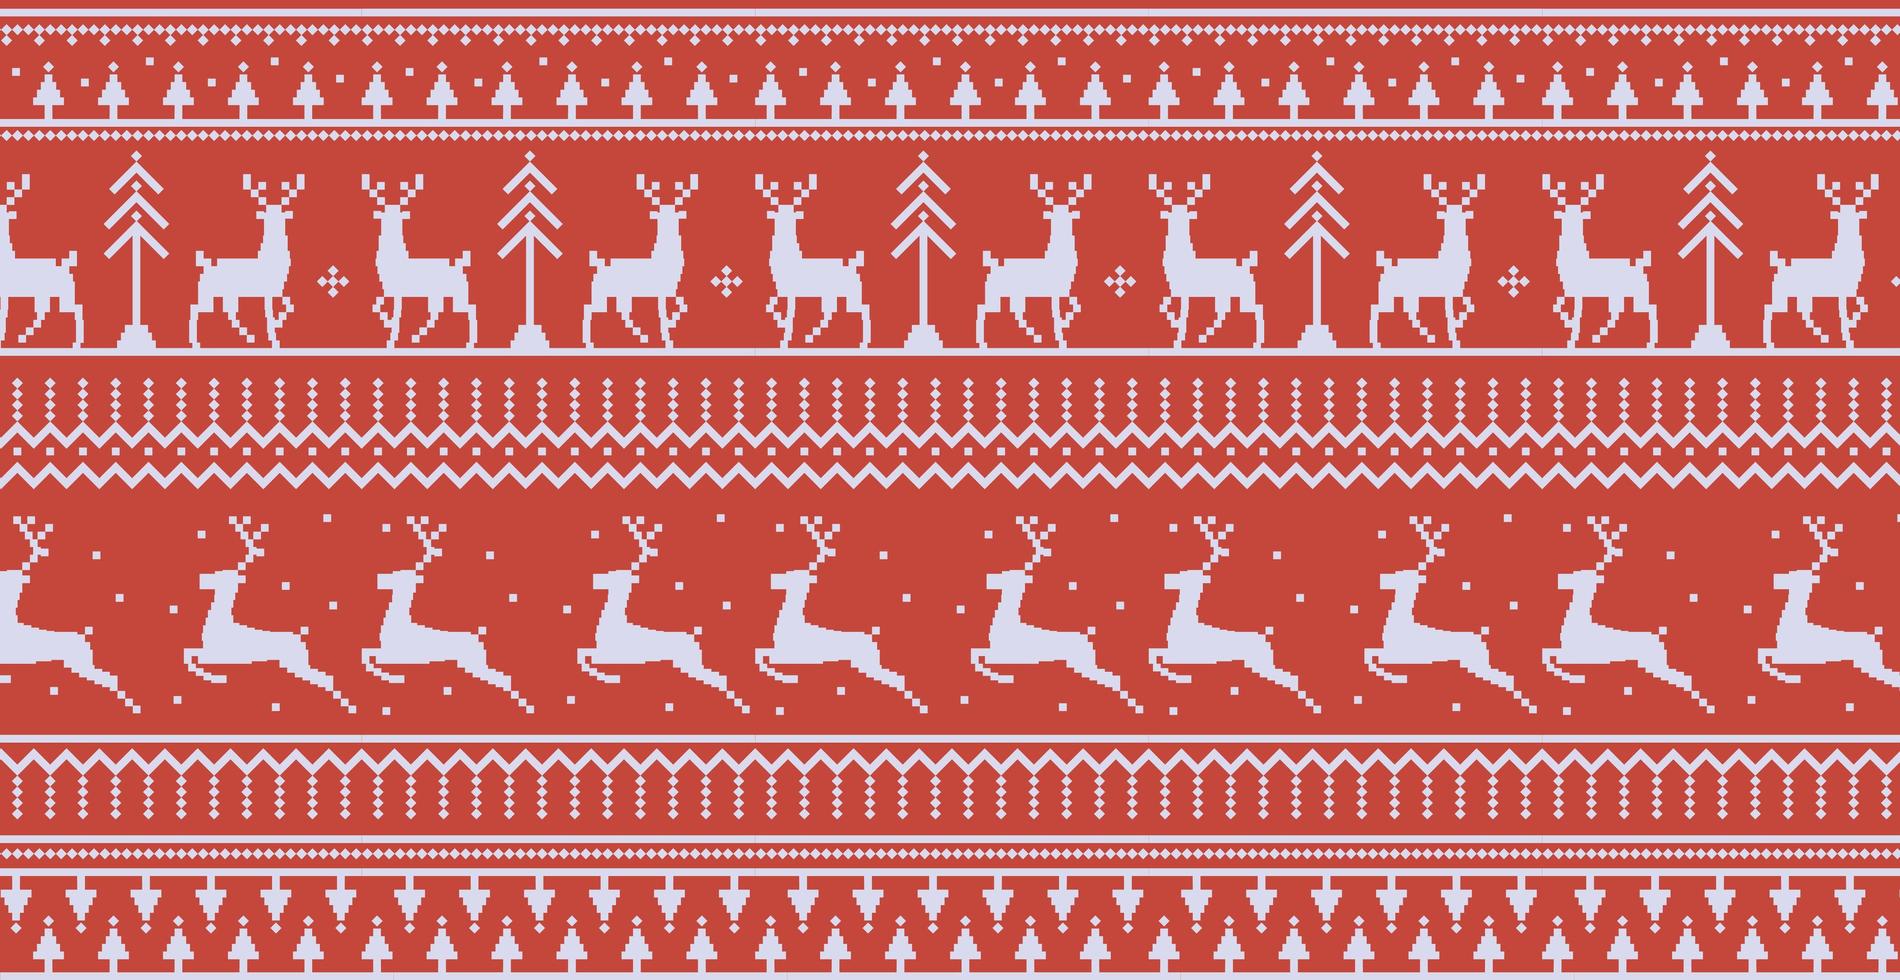 jul röd panoramabakgrund med teckningar av rådjur och mönster av semestern - vektor